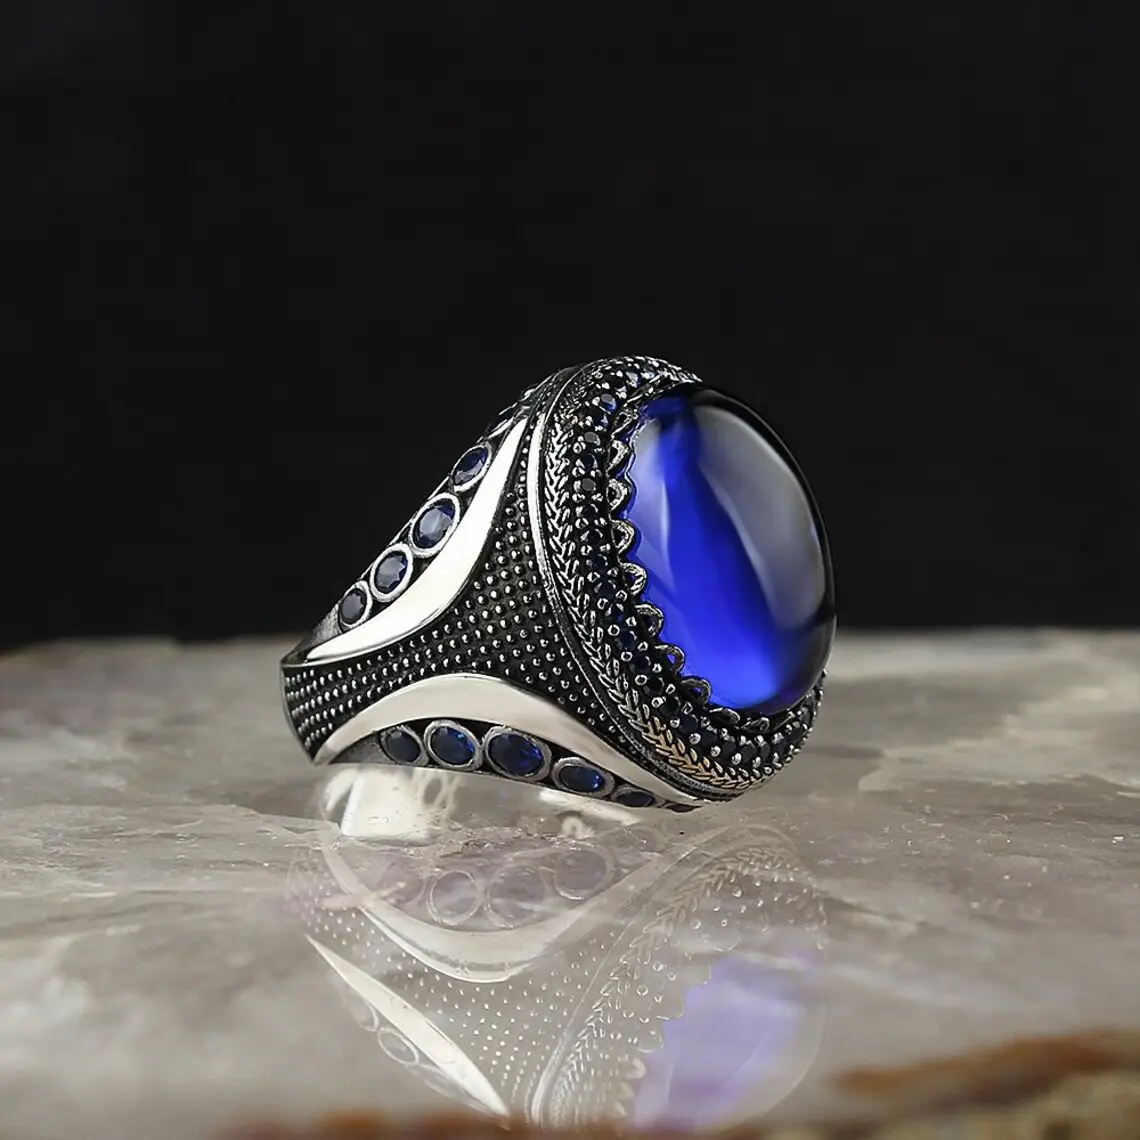 خاتم من الفضة الإسترليني العتيق للرجال مع اللازورد الأزرق الداكن خاتم من الفضة التايلاندية مع مجوهرات تركية سوداء للرجال